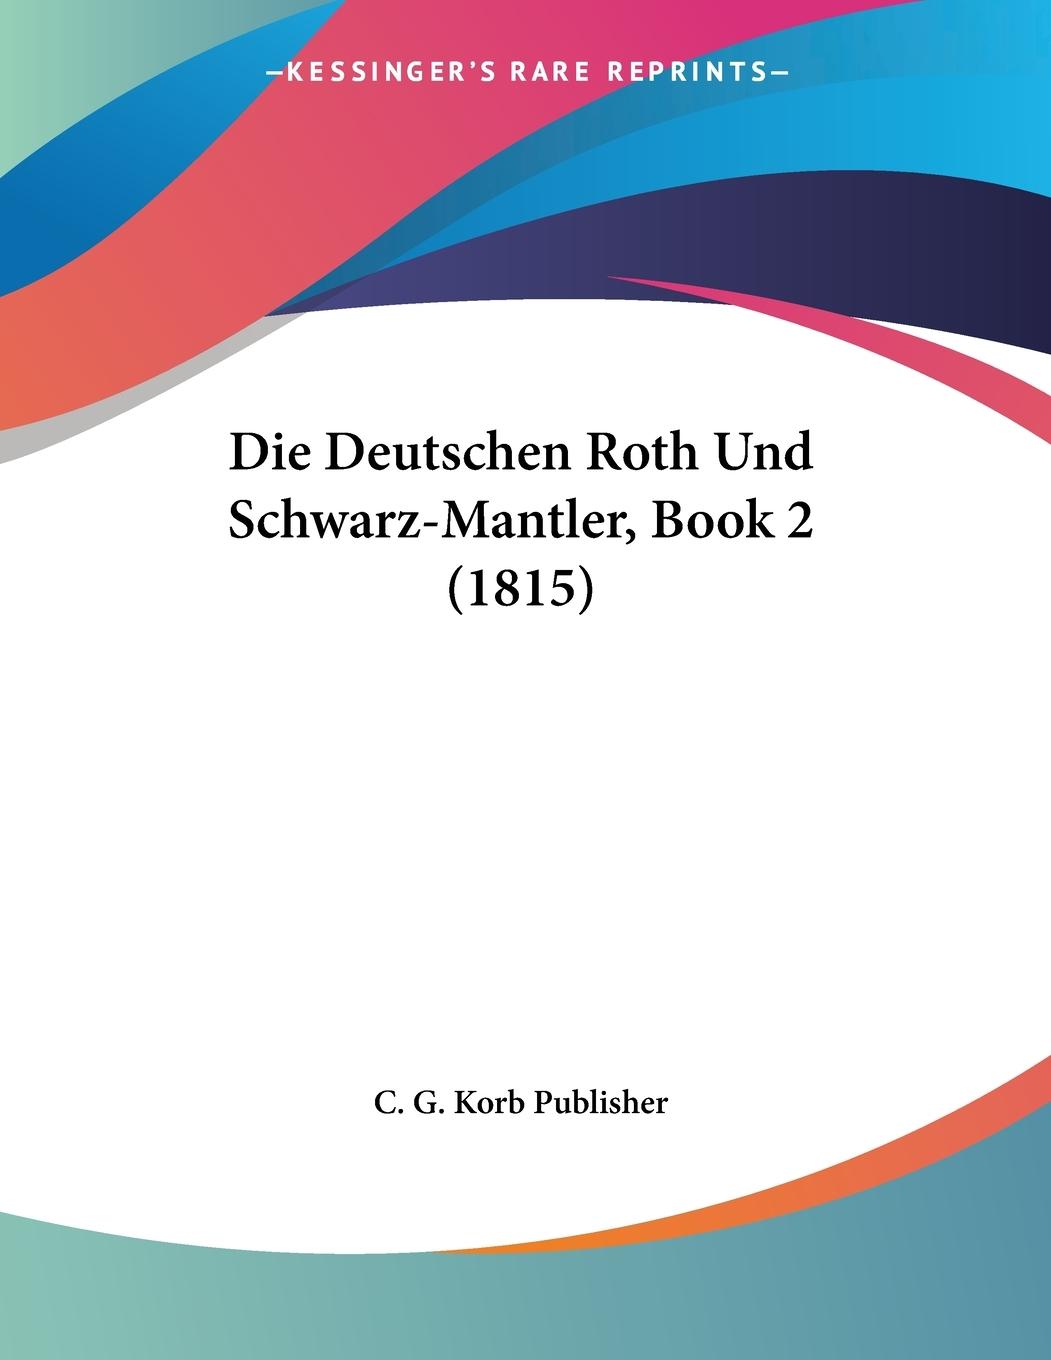 Die Deutschen Roth Und Schwarz-Mantler, Book 2 (1815) - C. G. Korb Publisher